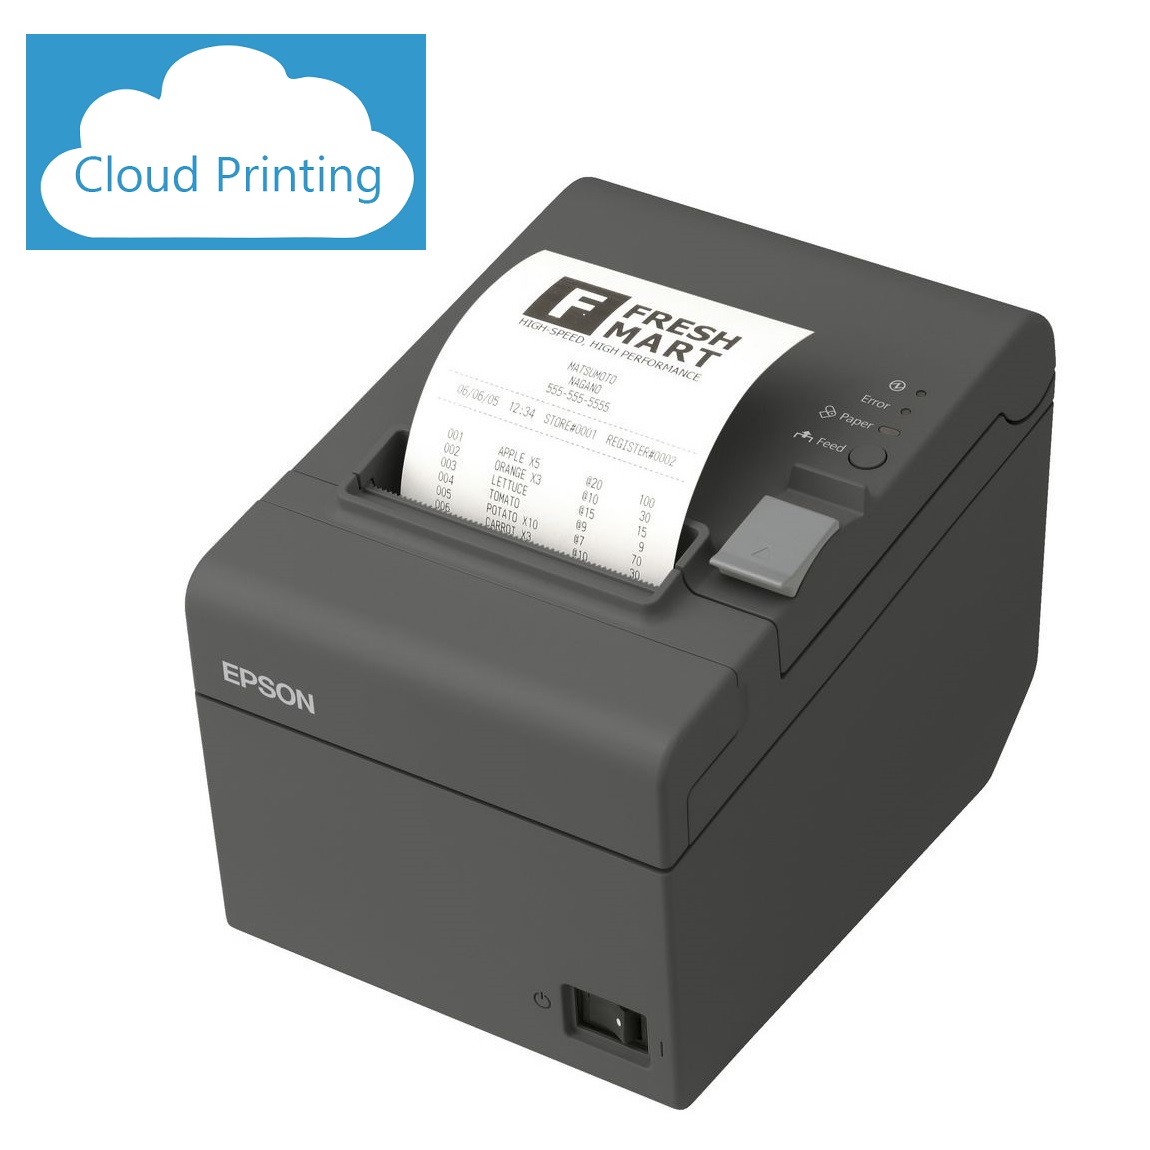 Epson TM-T82II-i Intelligent Cloud Print